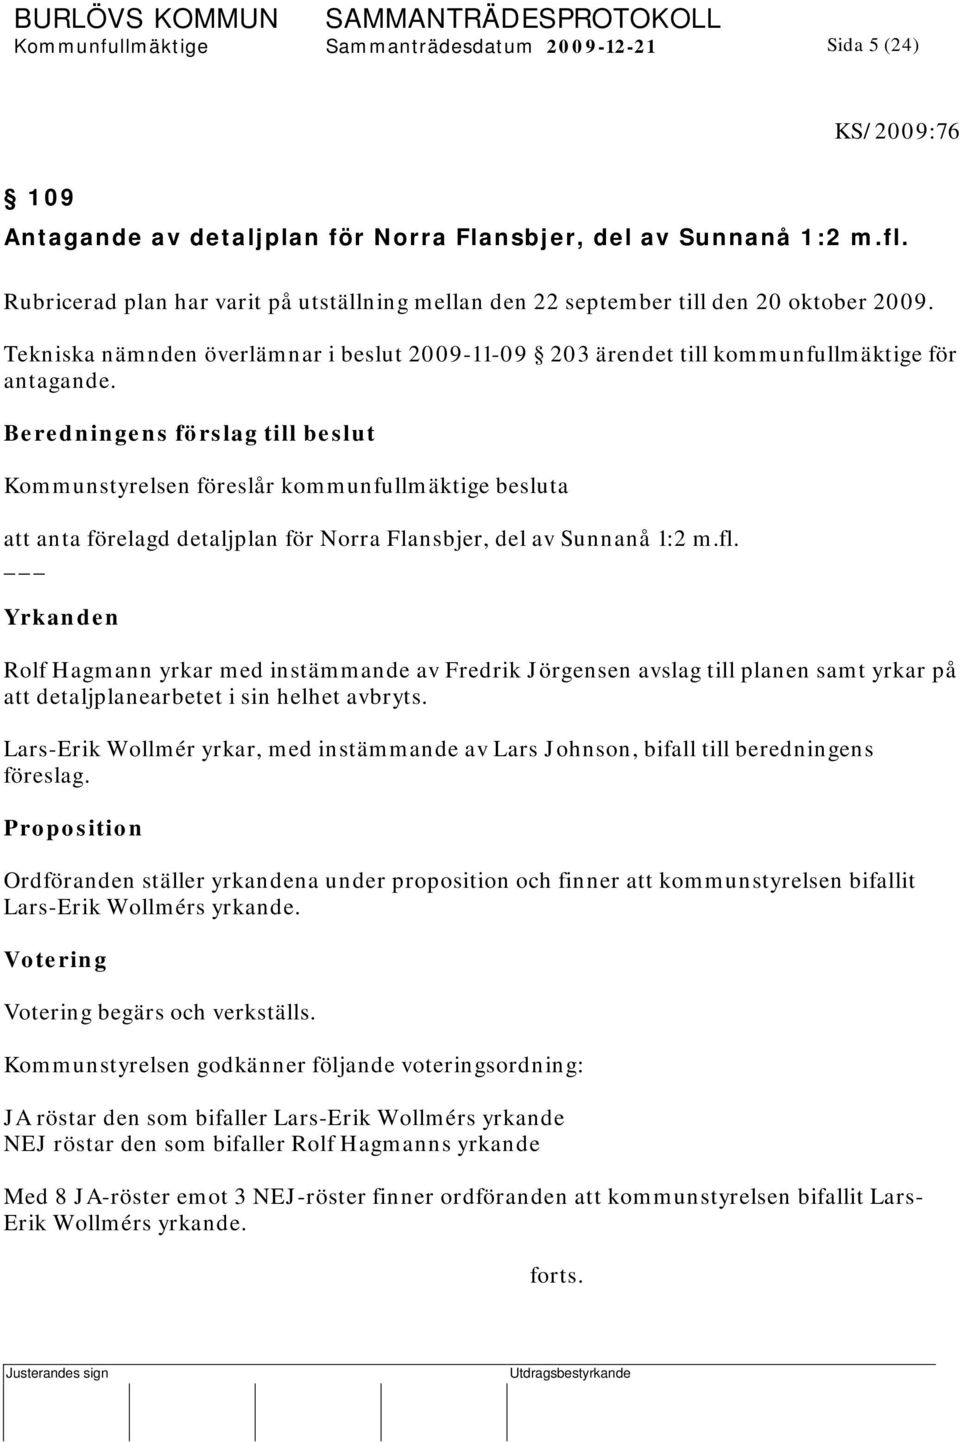 Beredningens förslag till beslut att anta förelagd detaljplan för Norra Flansbjer, del av Sunnanå 1:2 m.fl.